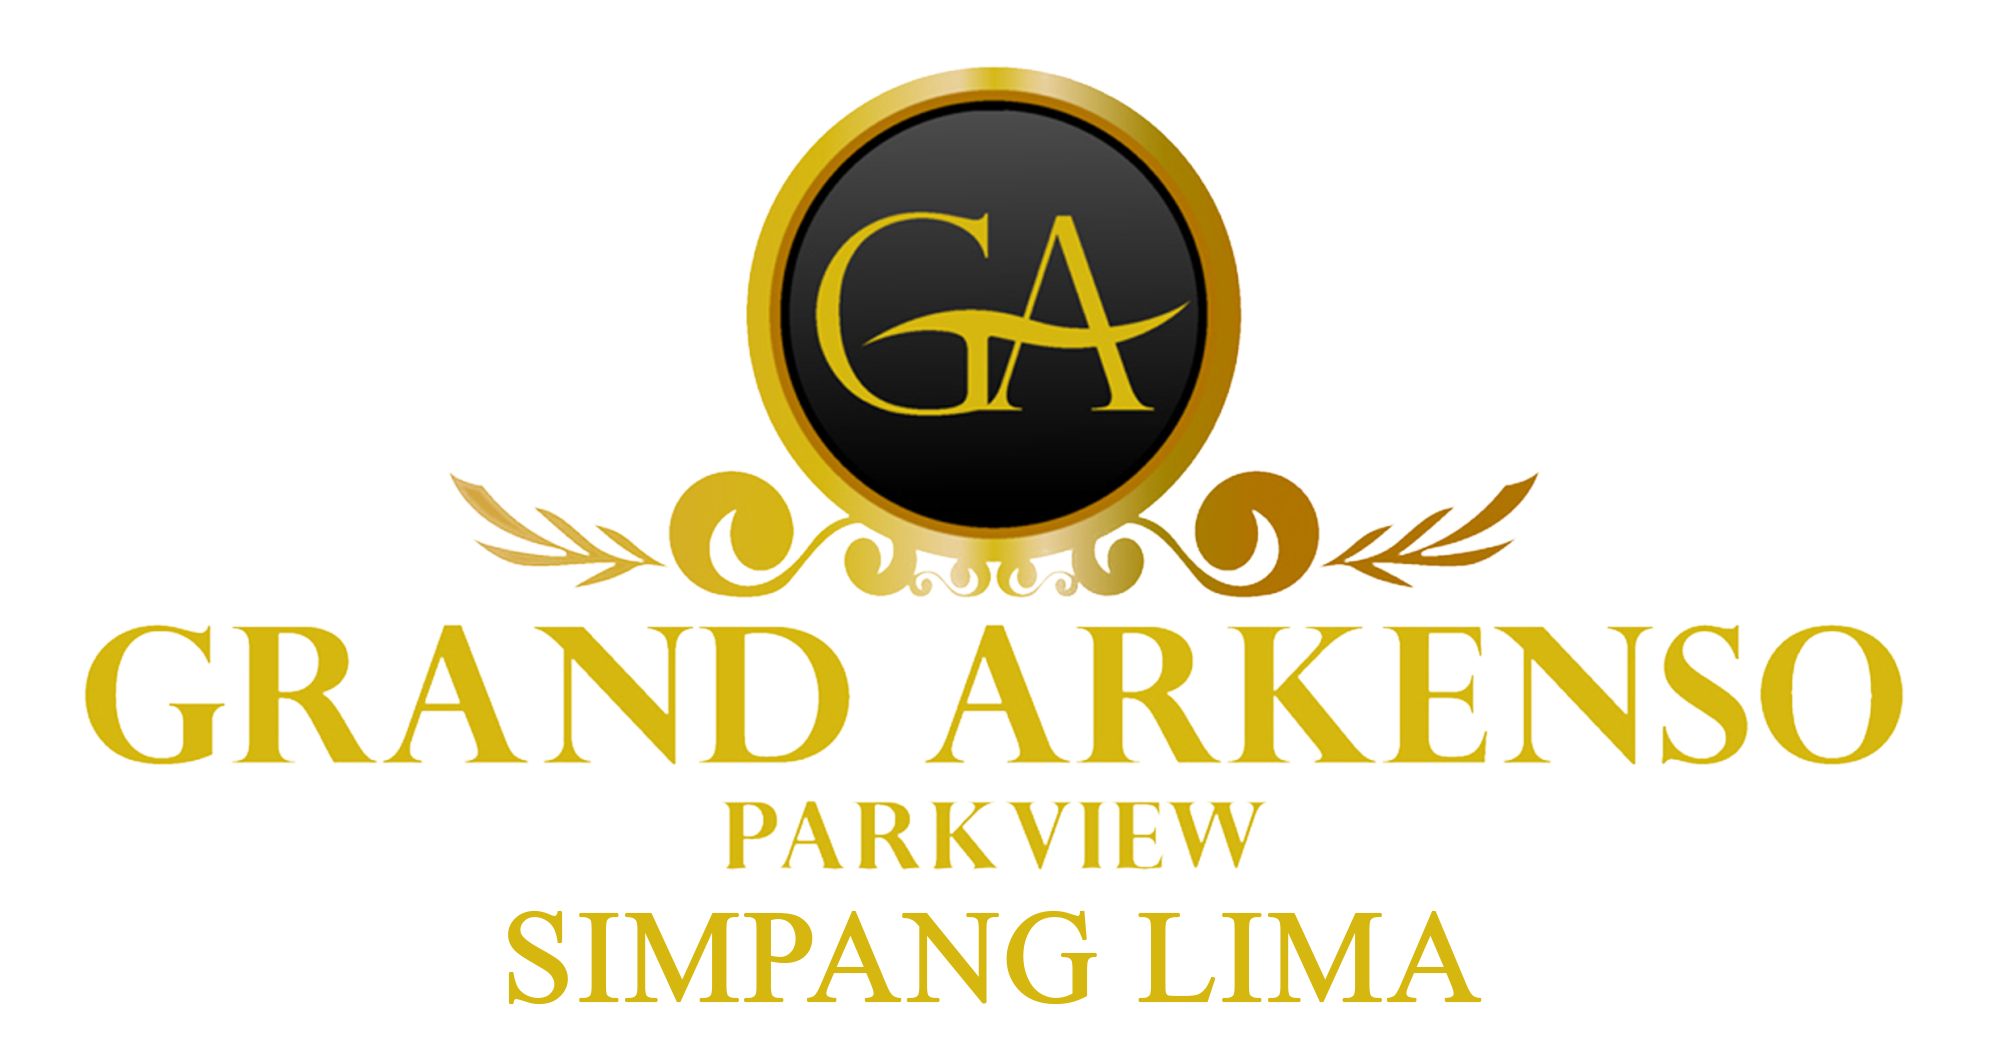 Grand Arkenso Park View Hotel Simpang lima Semarang